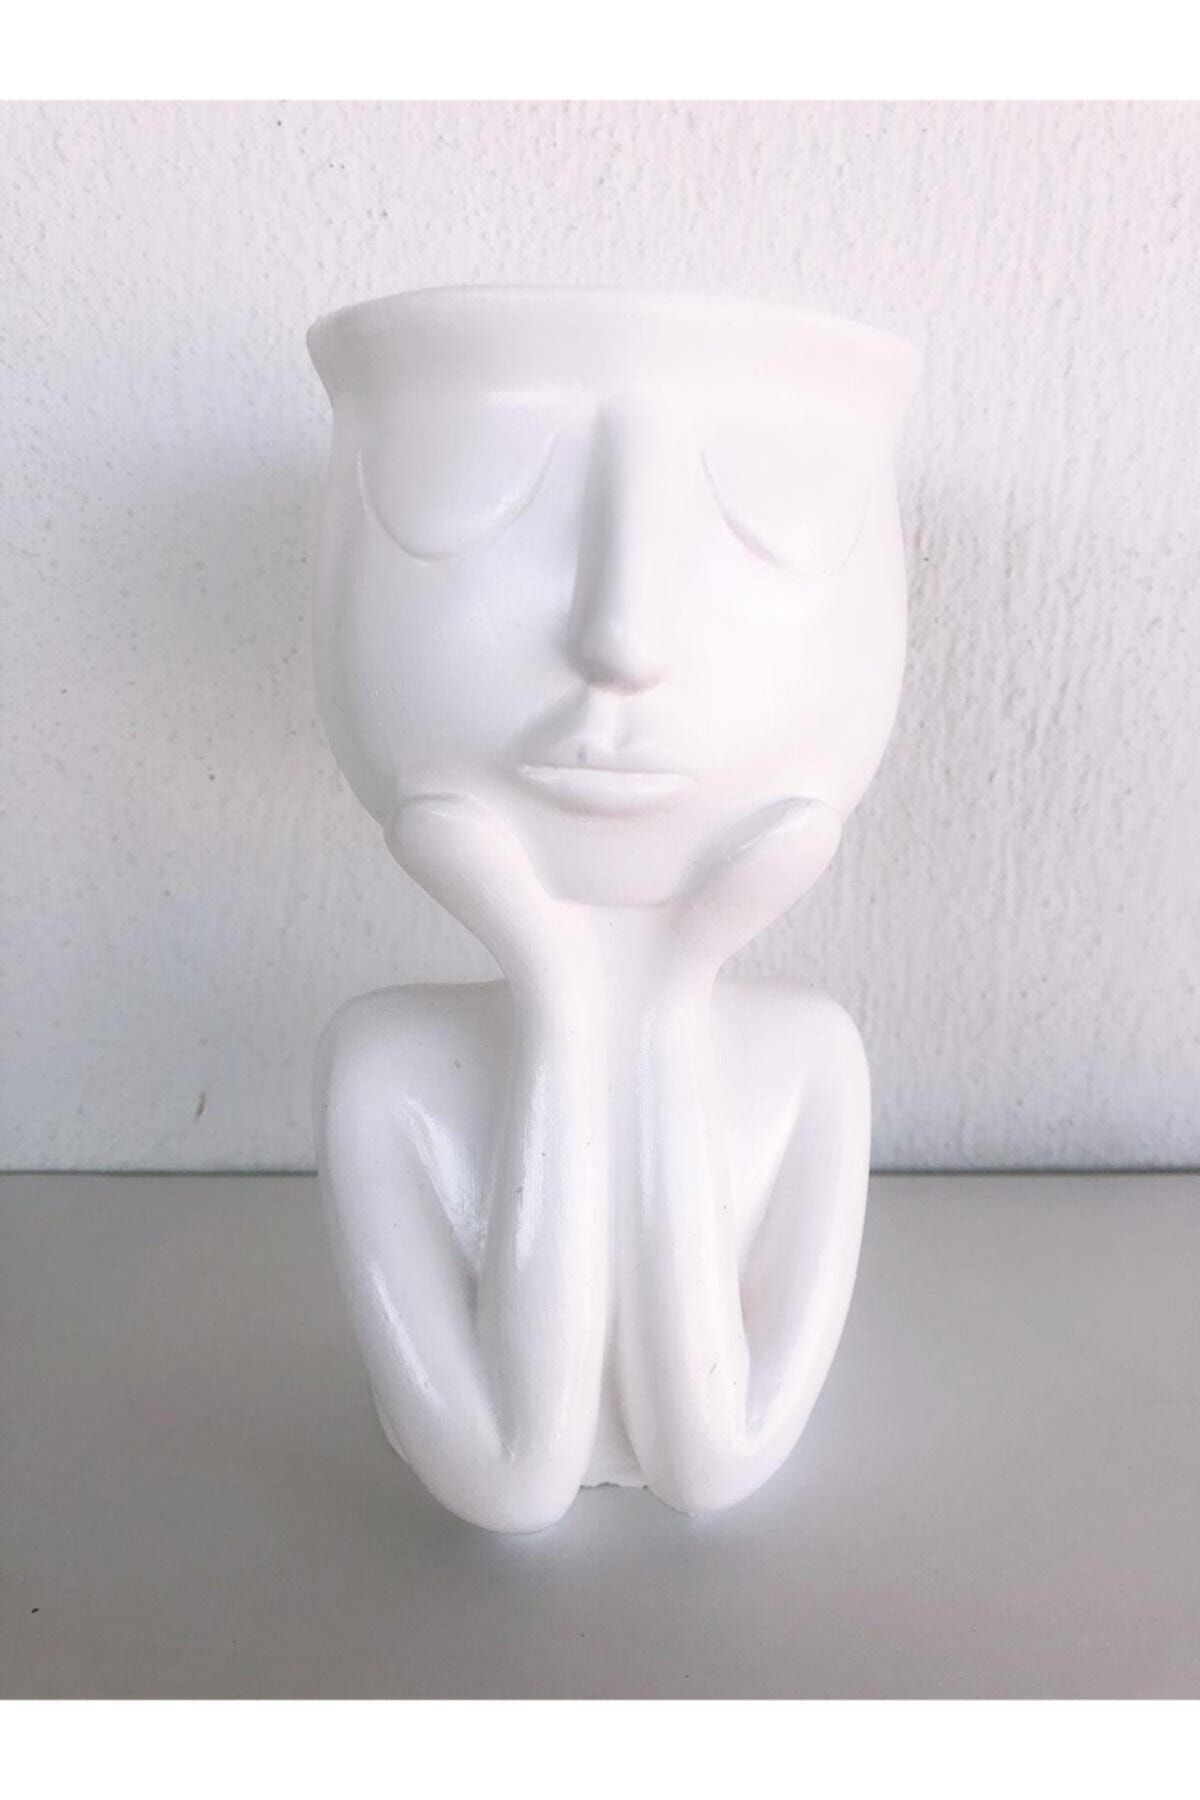 KOLDEMARTCOLLECTİON Thinking Vase Collection | Düşünen Saksı Koleksiyonu - Beyaz